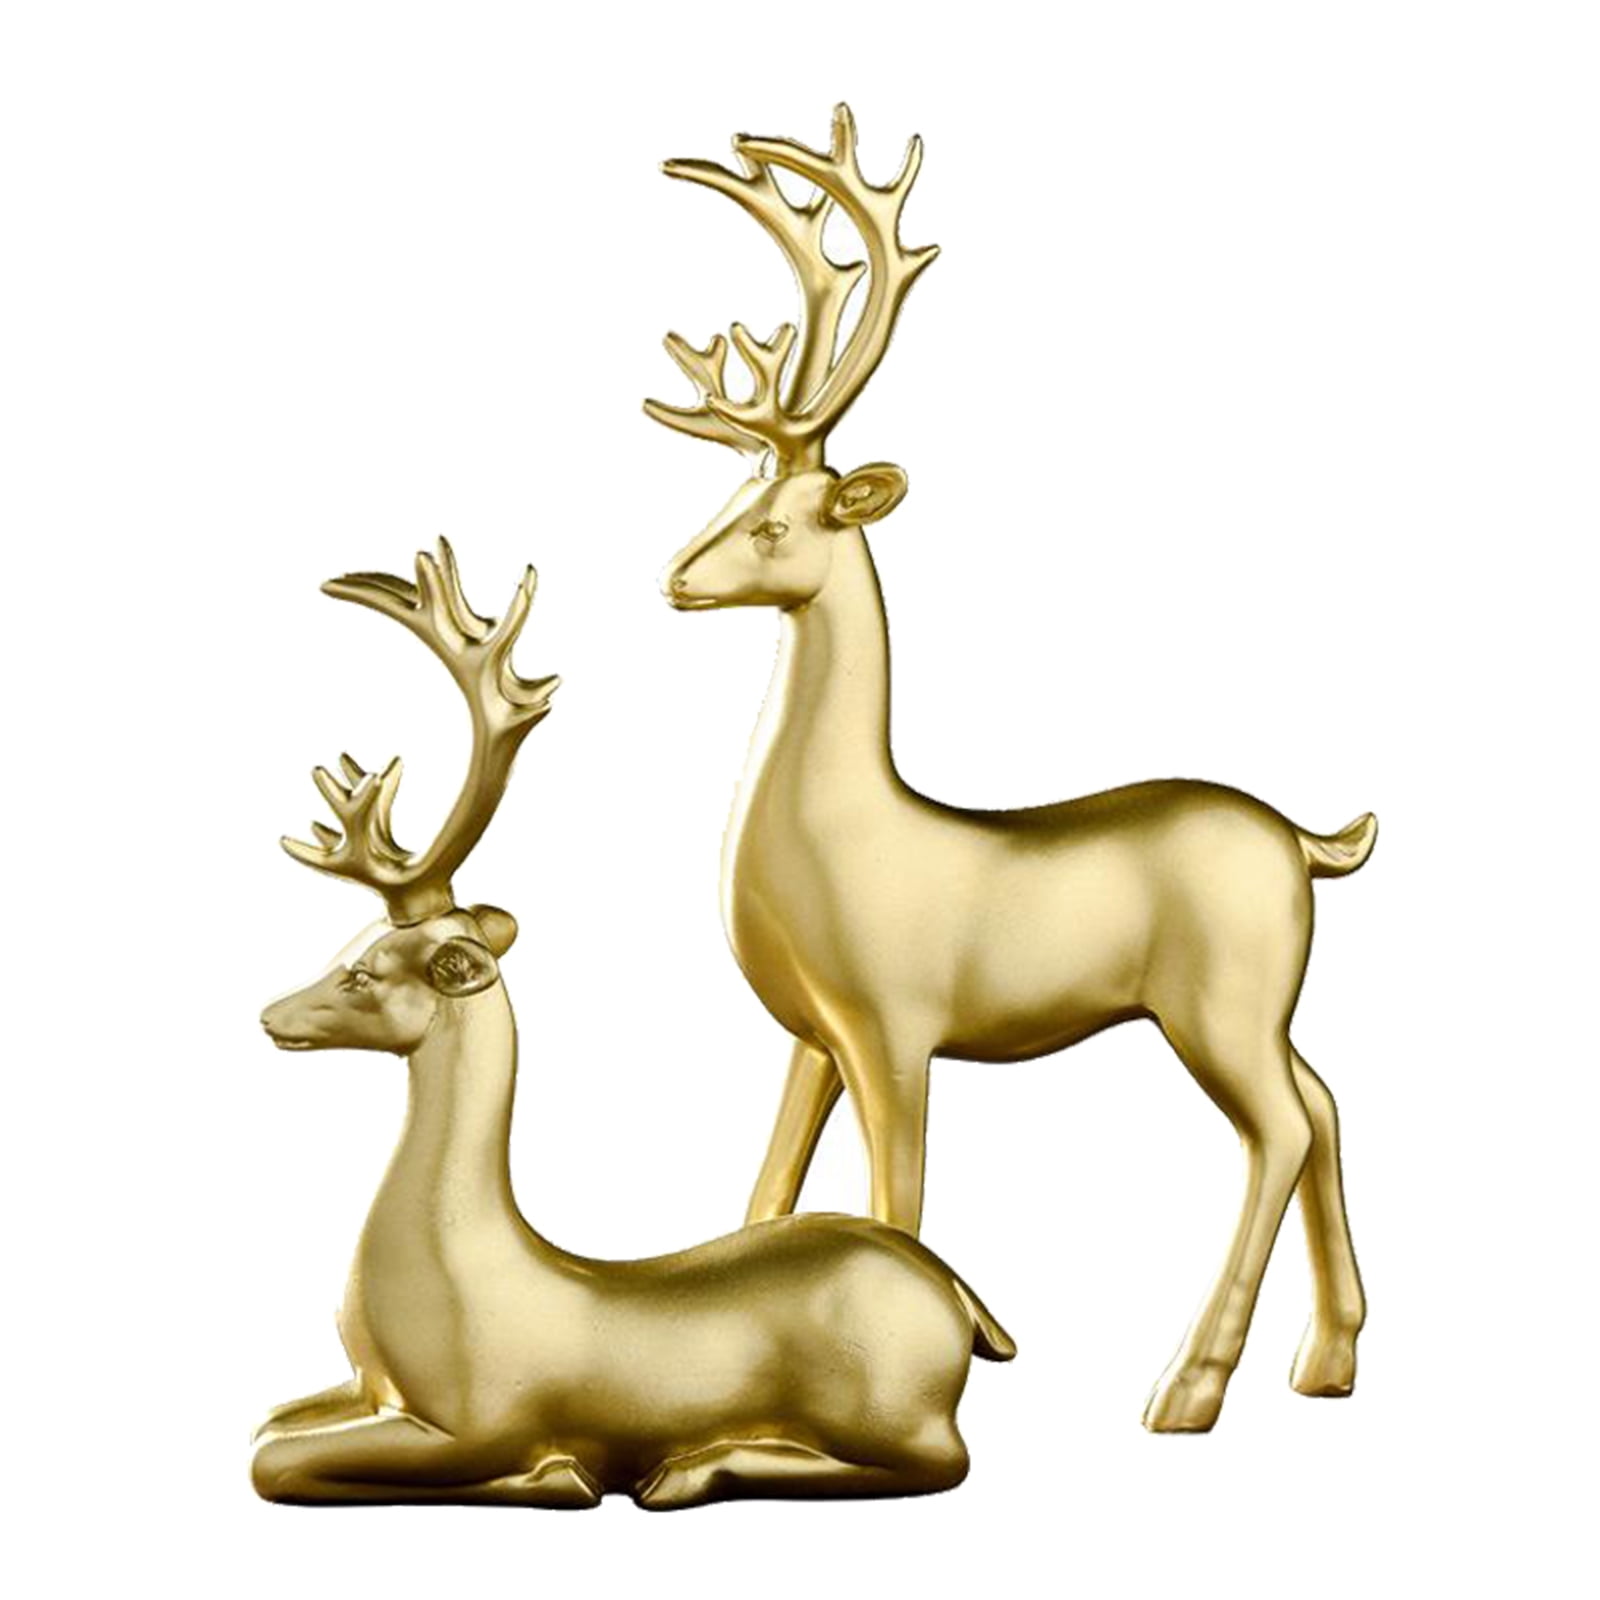 Set of 2 Resin Elk Deer Couple Home Figurine Display Statue Ornaments 